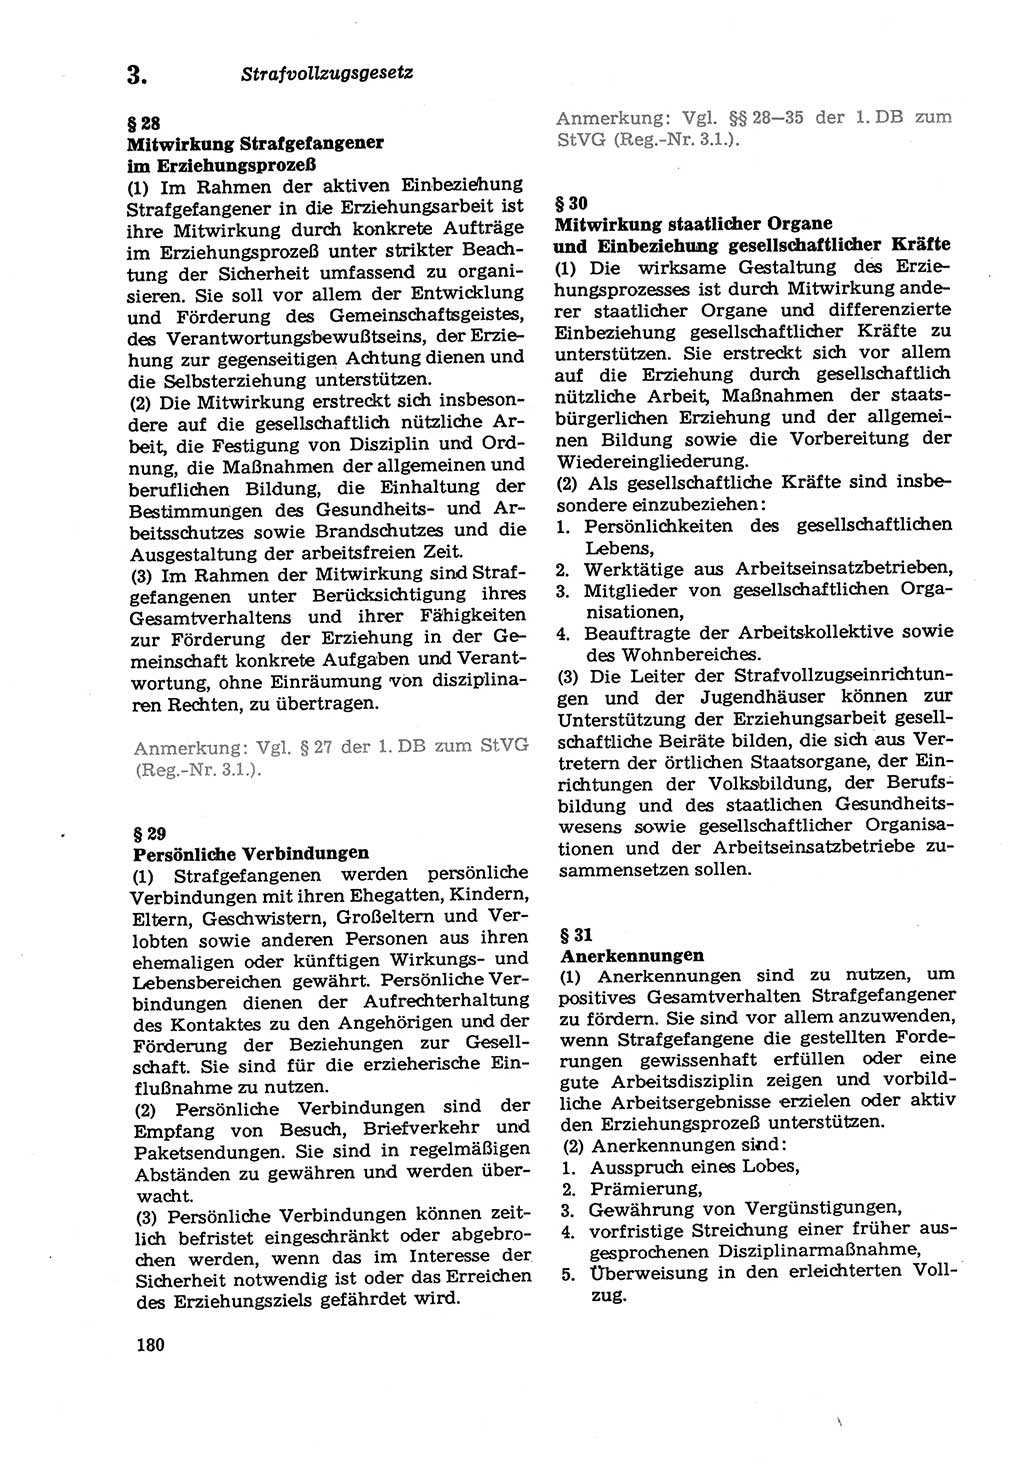 Strafprozeßordnung (StPO) der Deutschen Demokratischen Republik (DDR) sowie angrenzende Gesetze und Bestimmungen 1979, Seite 180 (StPO DDR Ges. Best. 1979, S. 180)